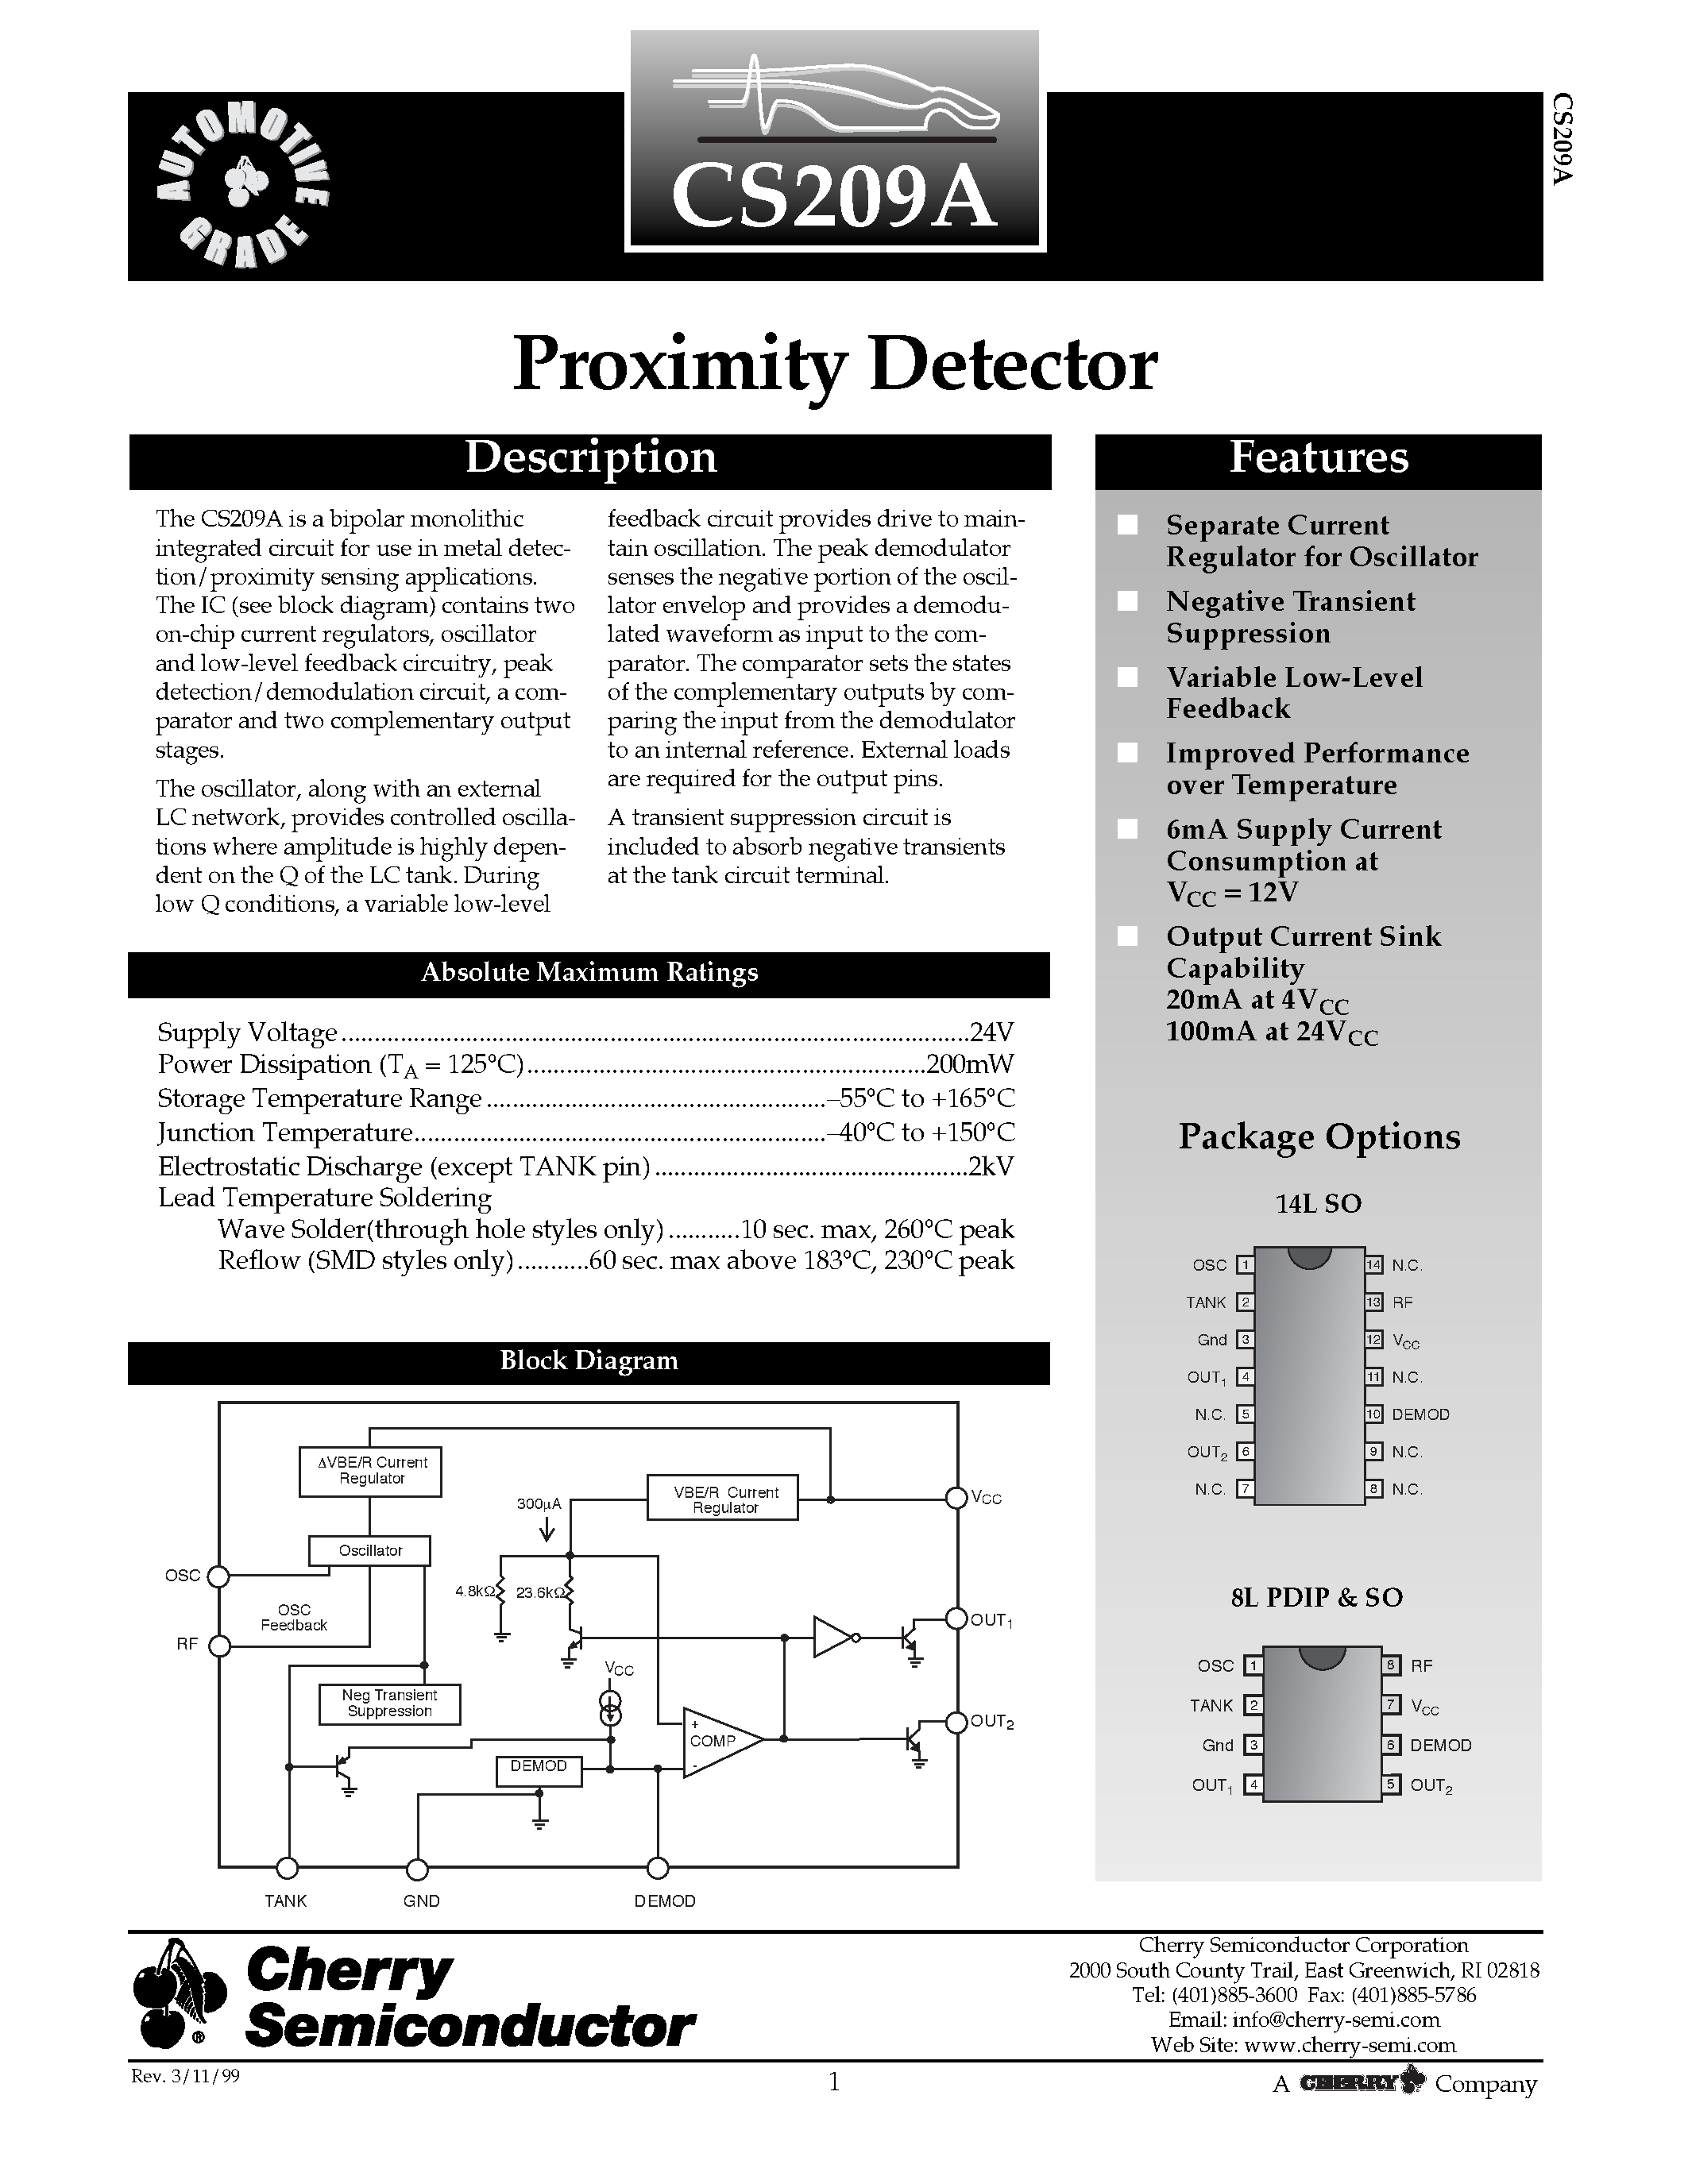 Даташит CS209AYD8 - Proximity Detector страница 1